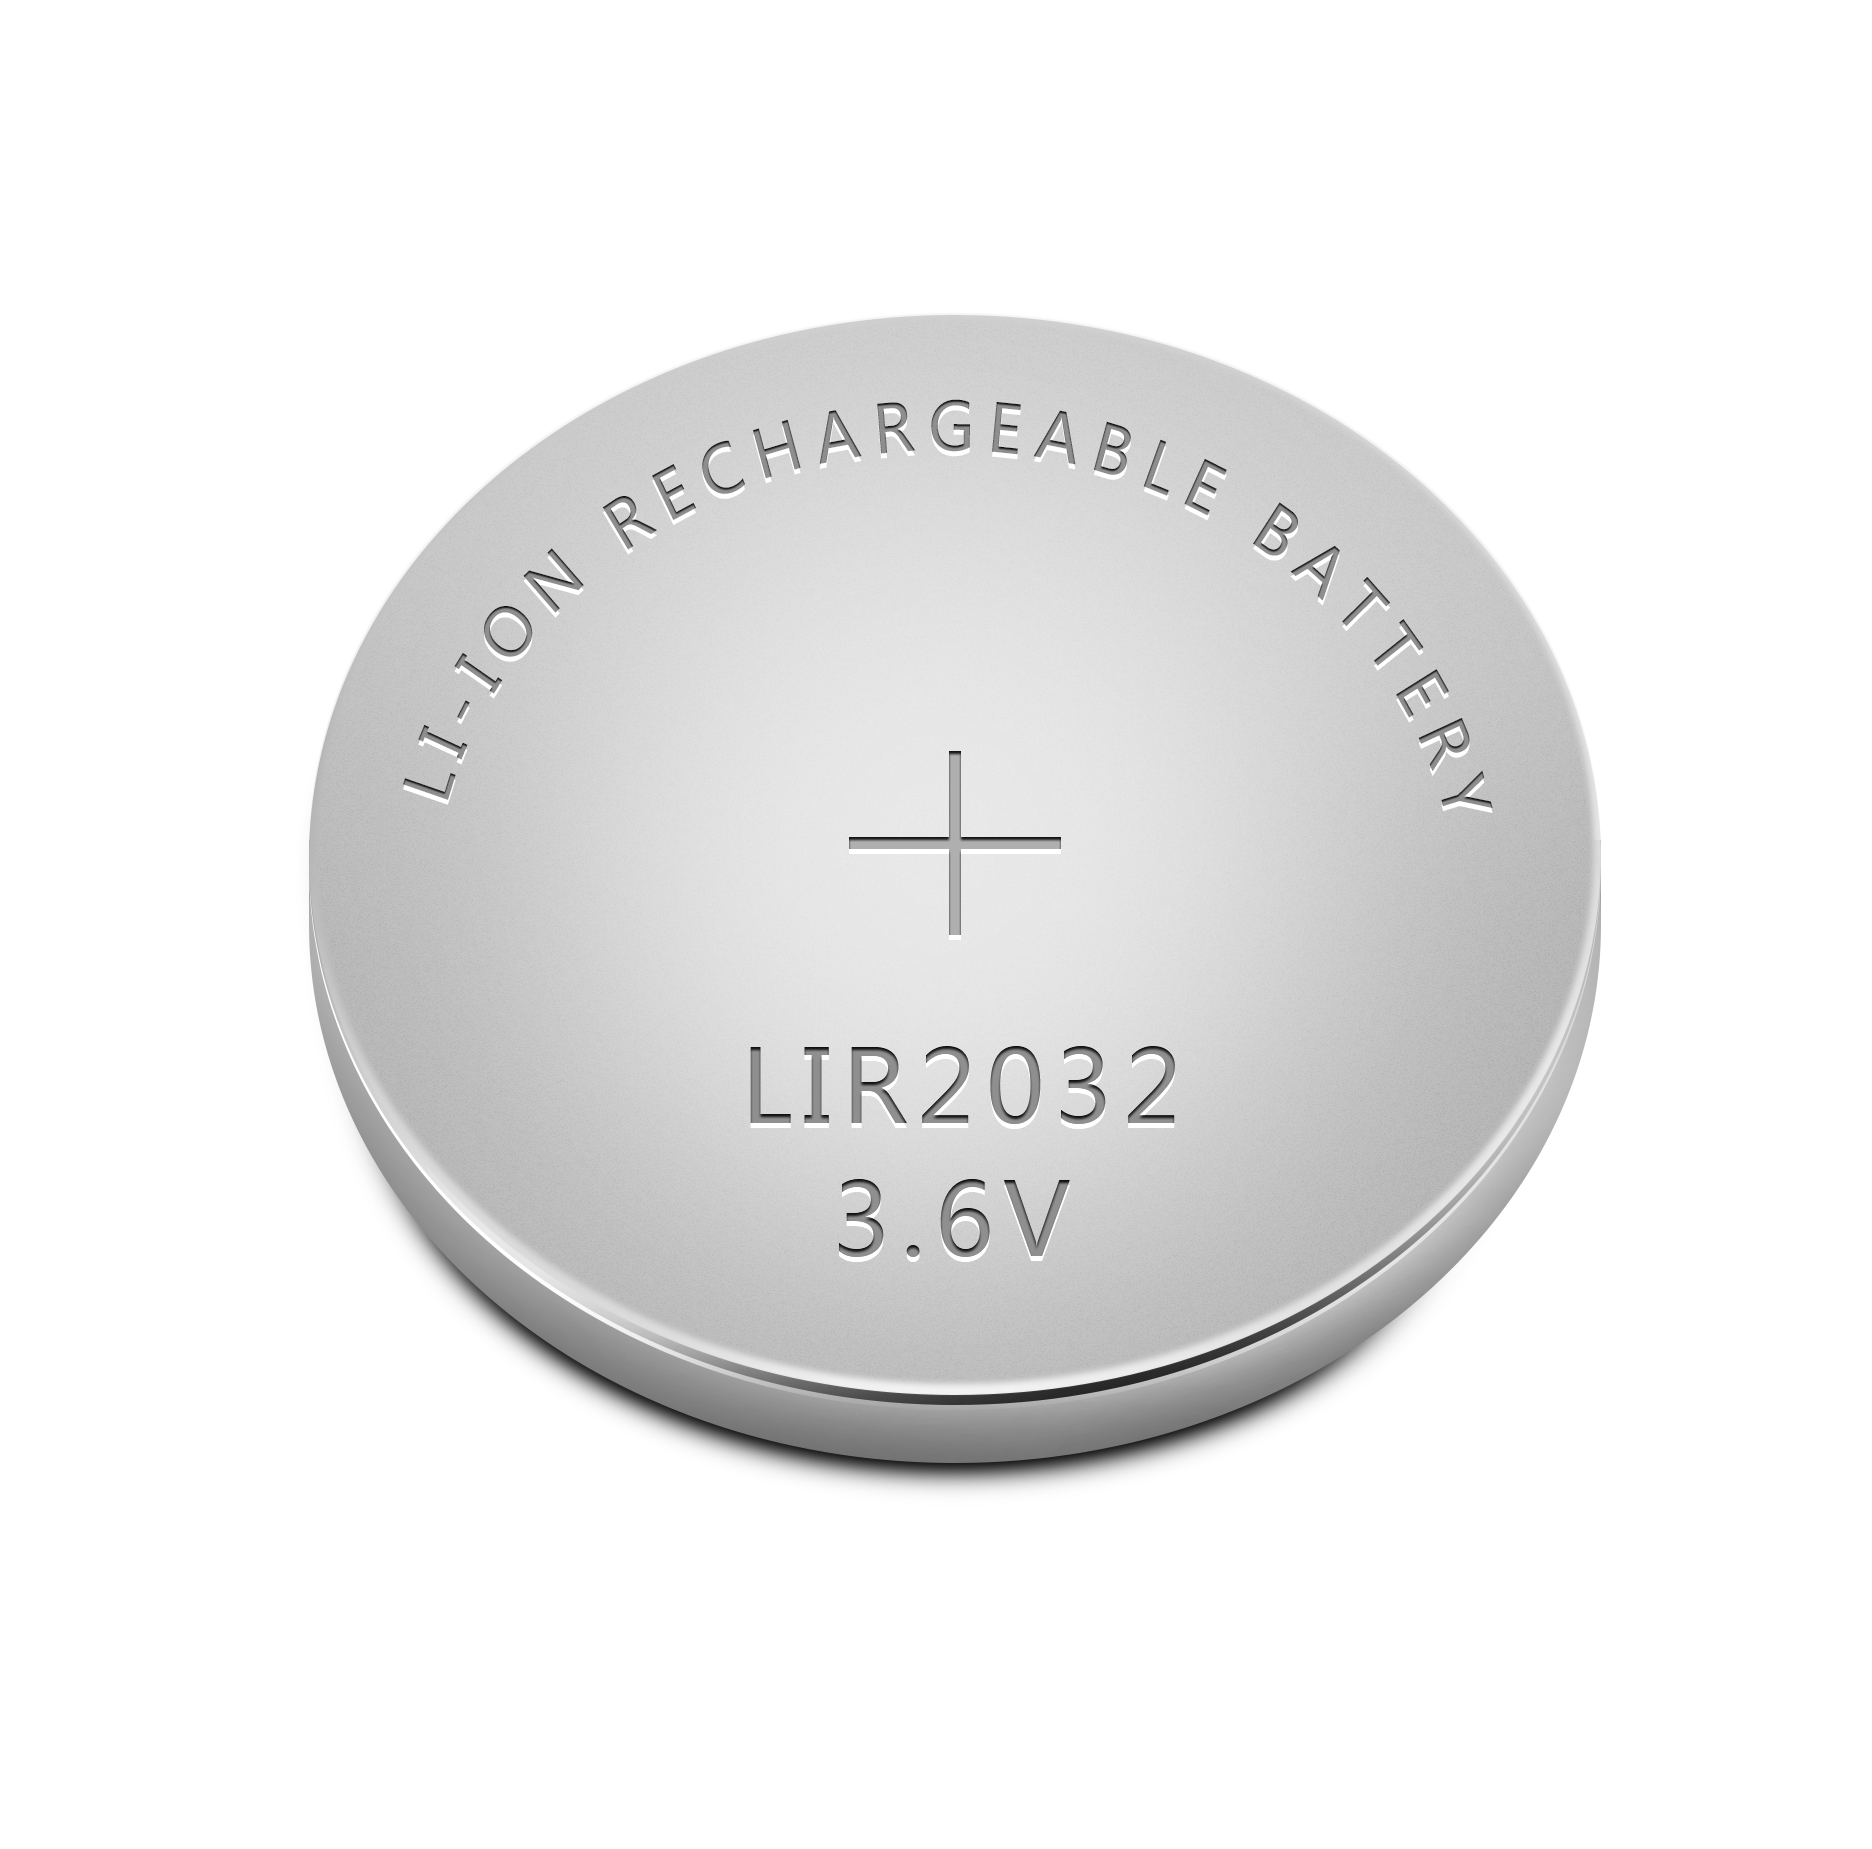 迈洛克厂家生产LIR2032可充纽扣电池、LIR2032纽扣电池焊脚、加线，配套电池座